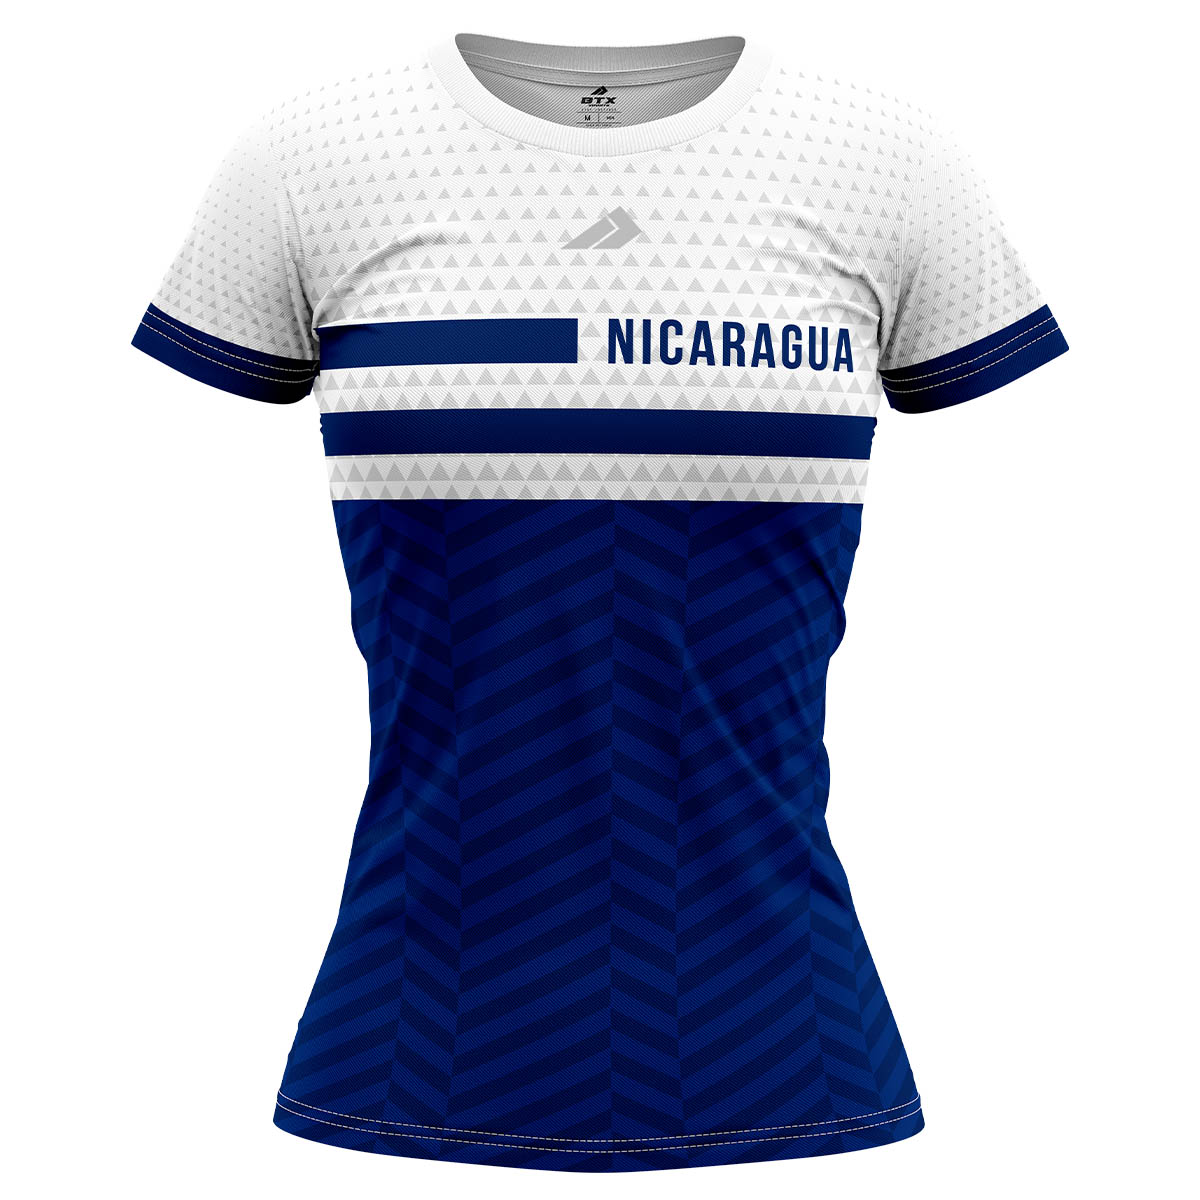 Camiseta de Dama cuello redondo Nicaragua Blanco y Azul